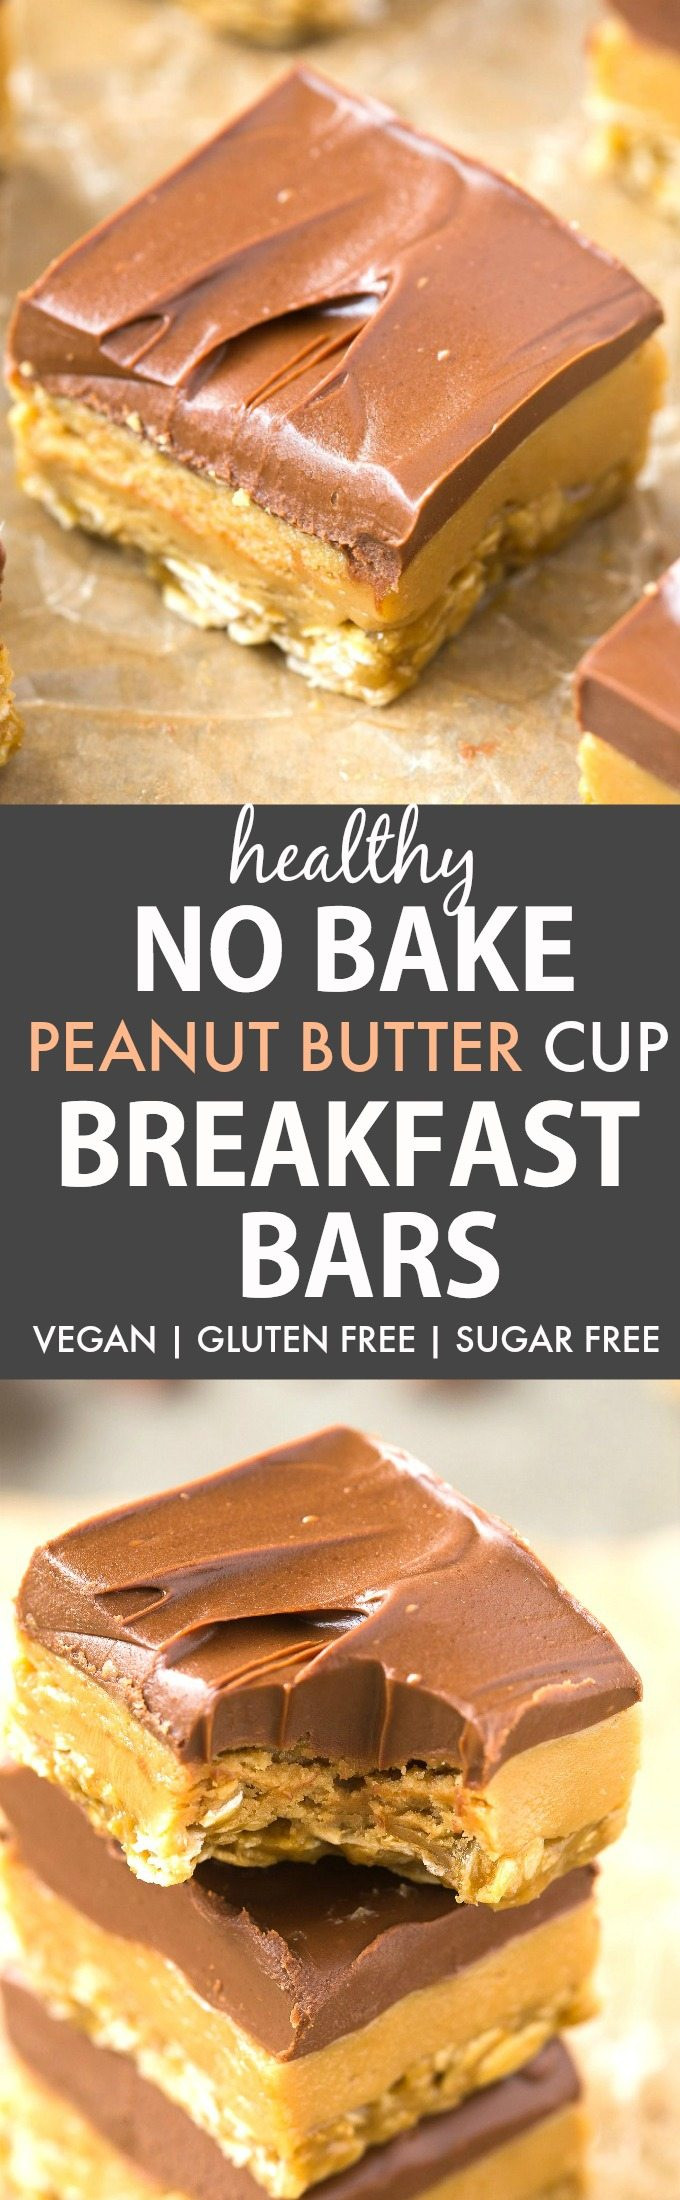 Healthy Peanut Butter Breakfast
 Healthy No Bake Peanut Butter Cup Breakfast Bars Vegan